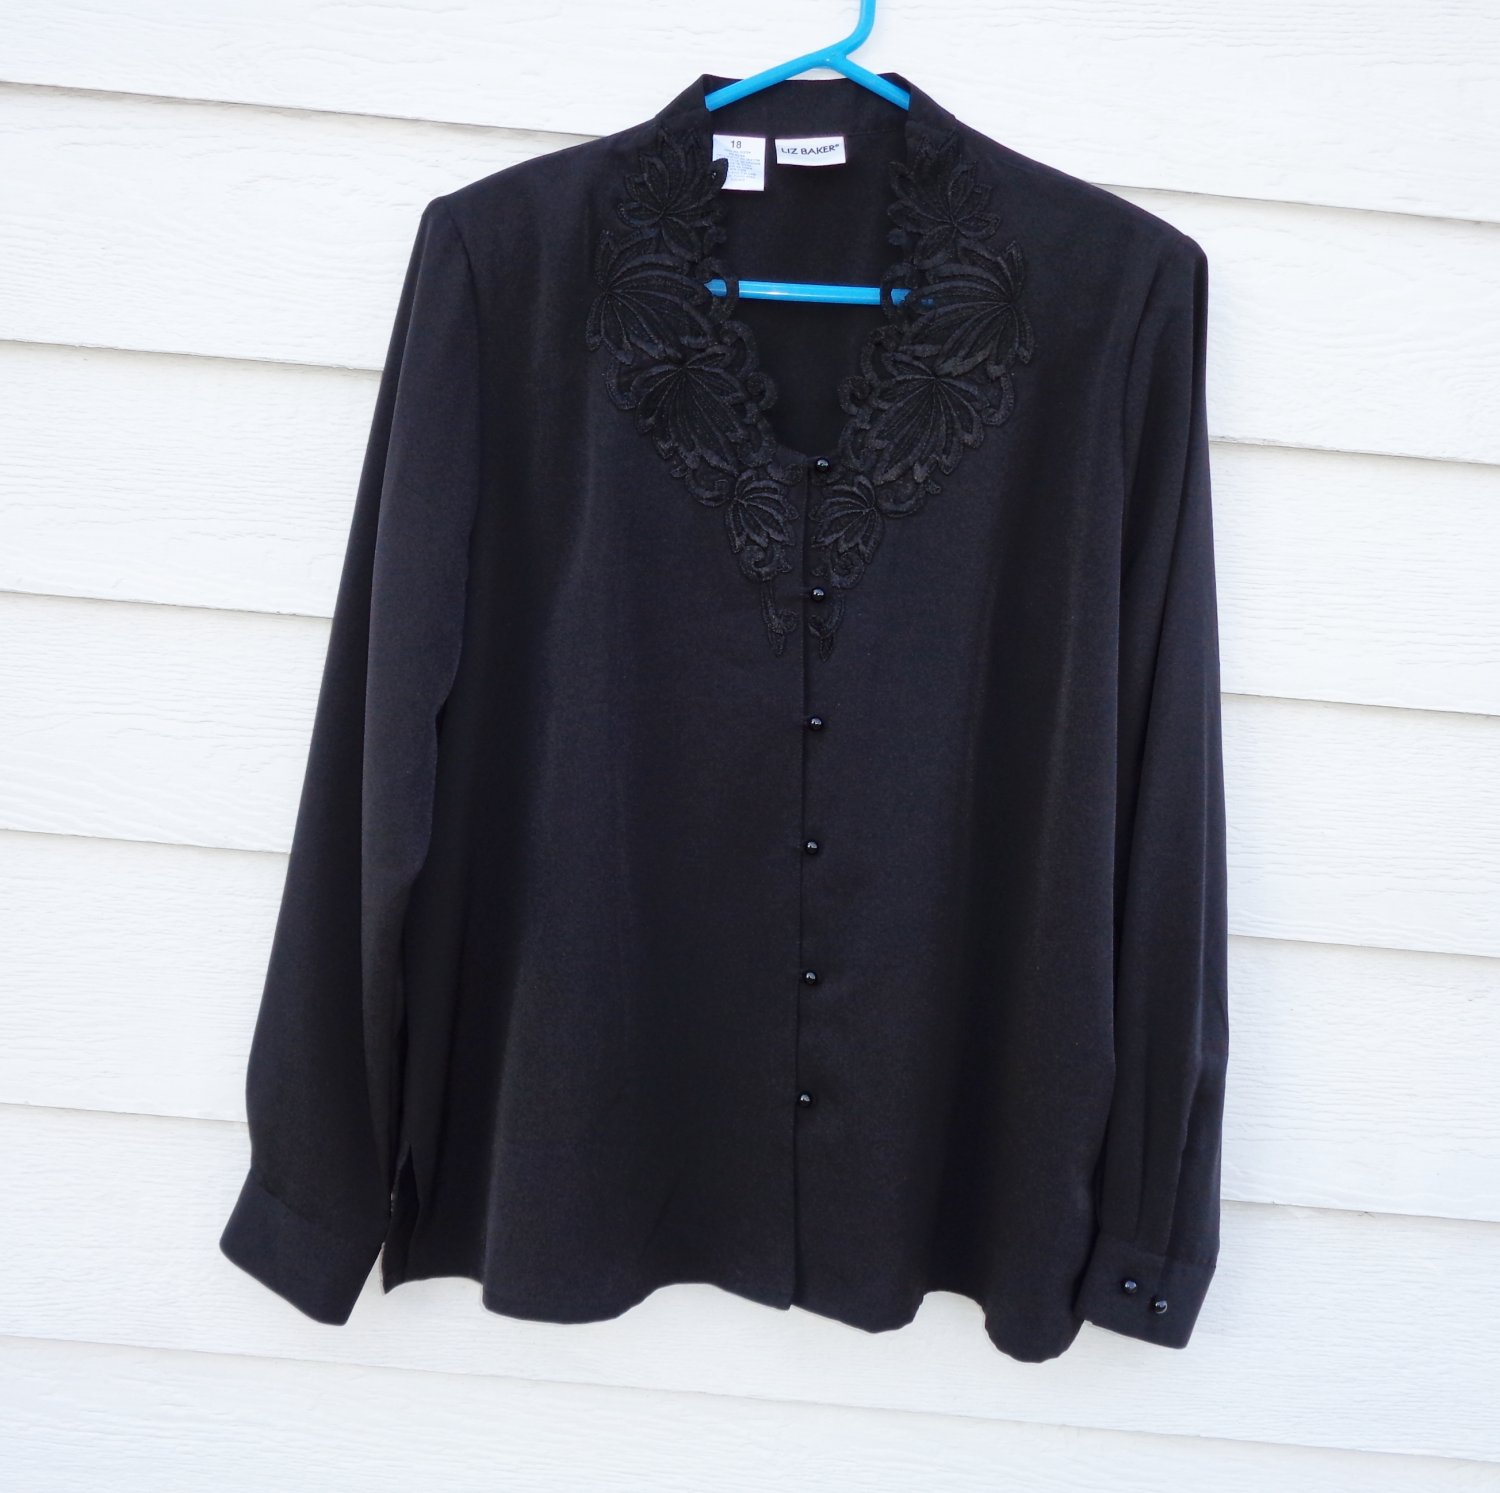 Liz Baker Black Blouse Shirt 18 47 Chest Silky Embroidered